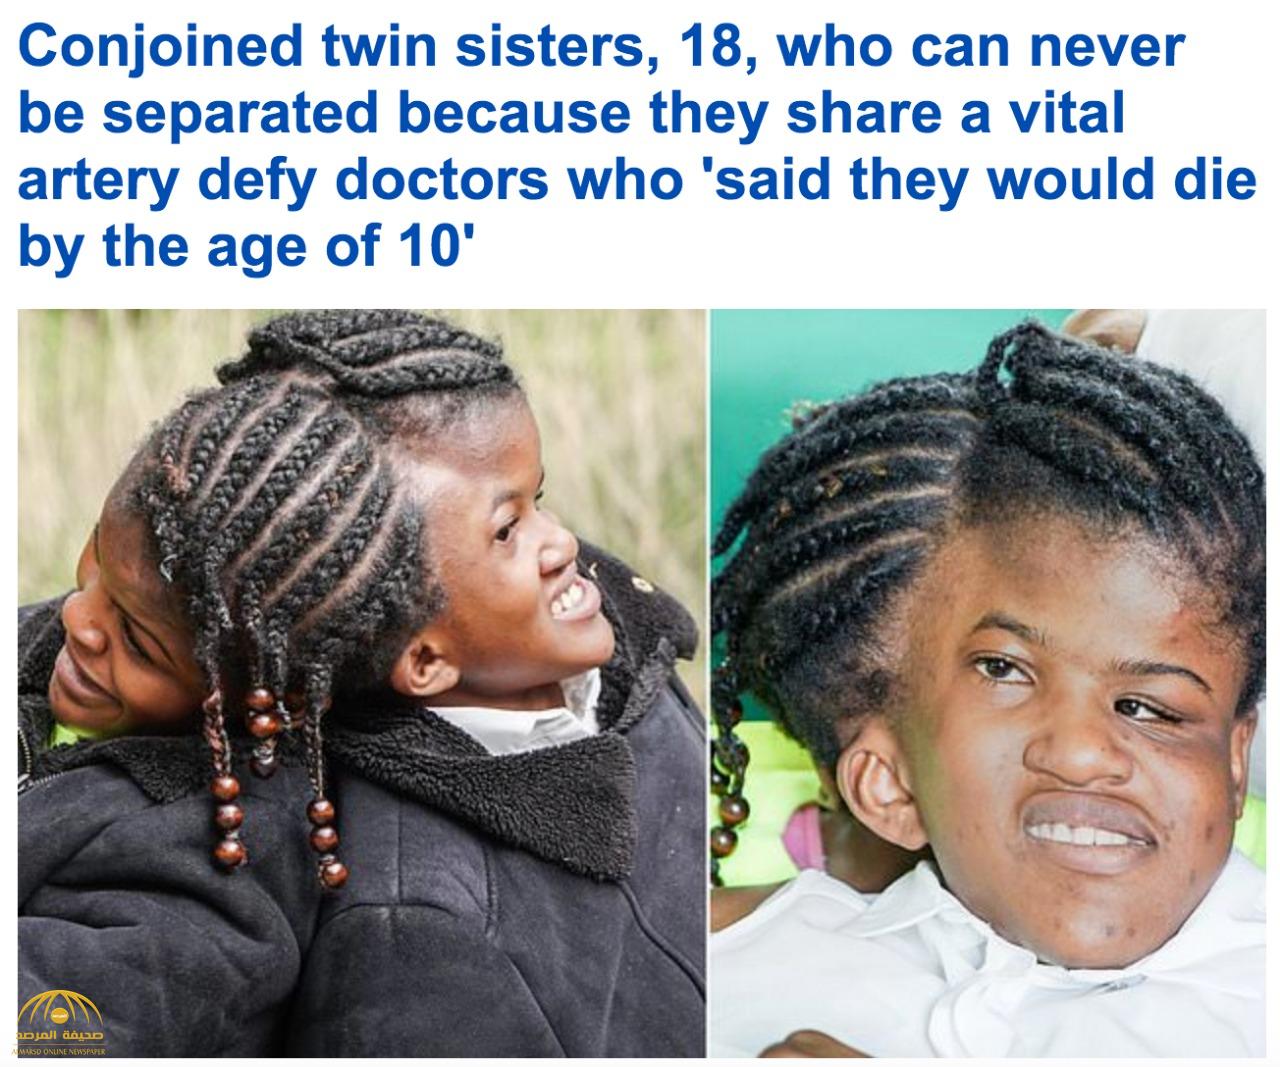 لله في خلقه شؤون.. شاهد: فتاتان ملتصقتان عند منطقة الرأس.. وهذا ما أكده الأطباء بشأن حالتيهما!